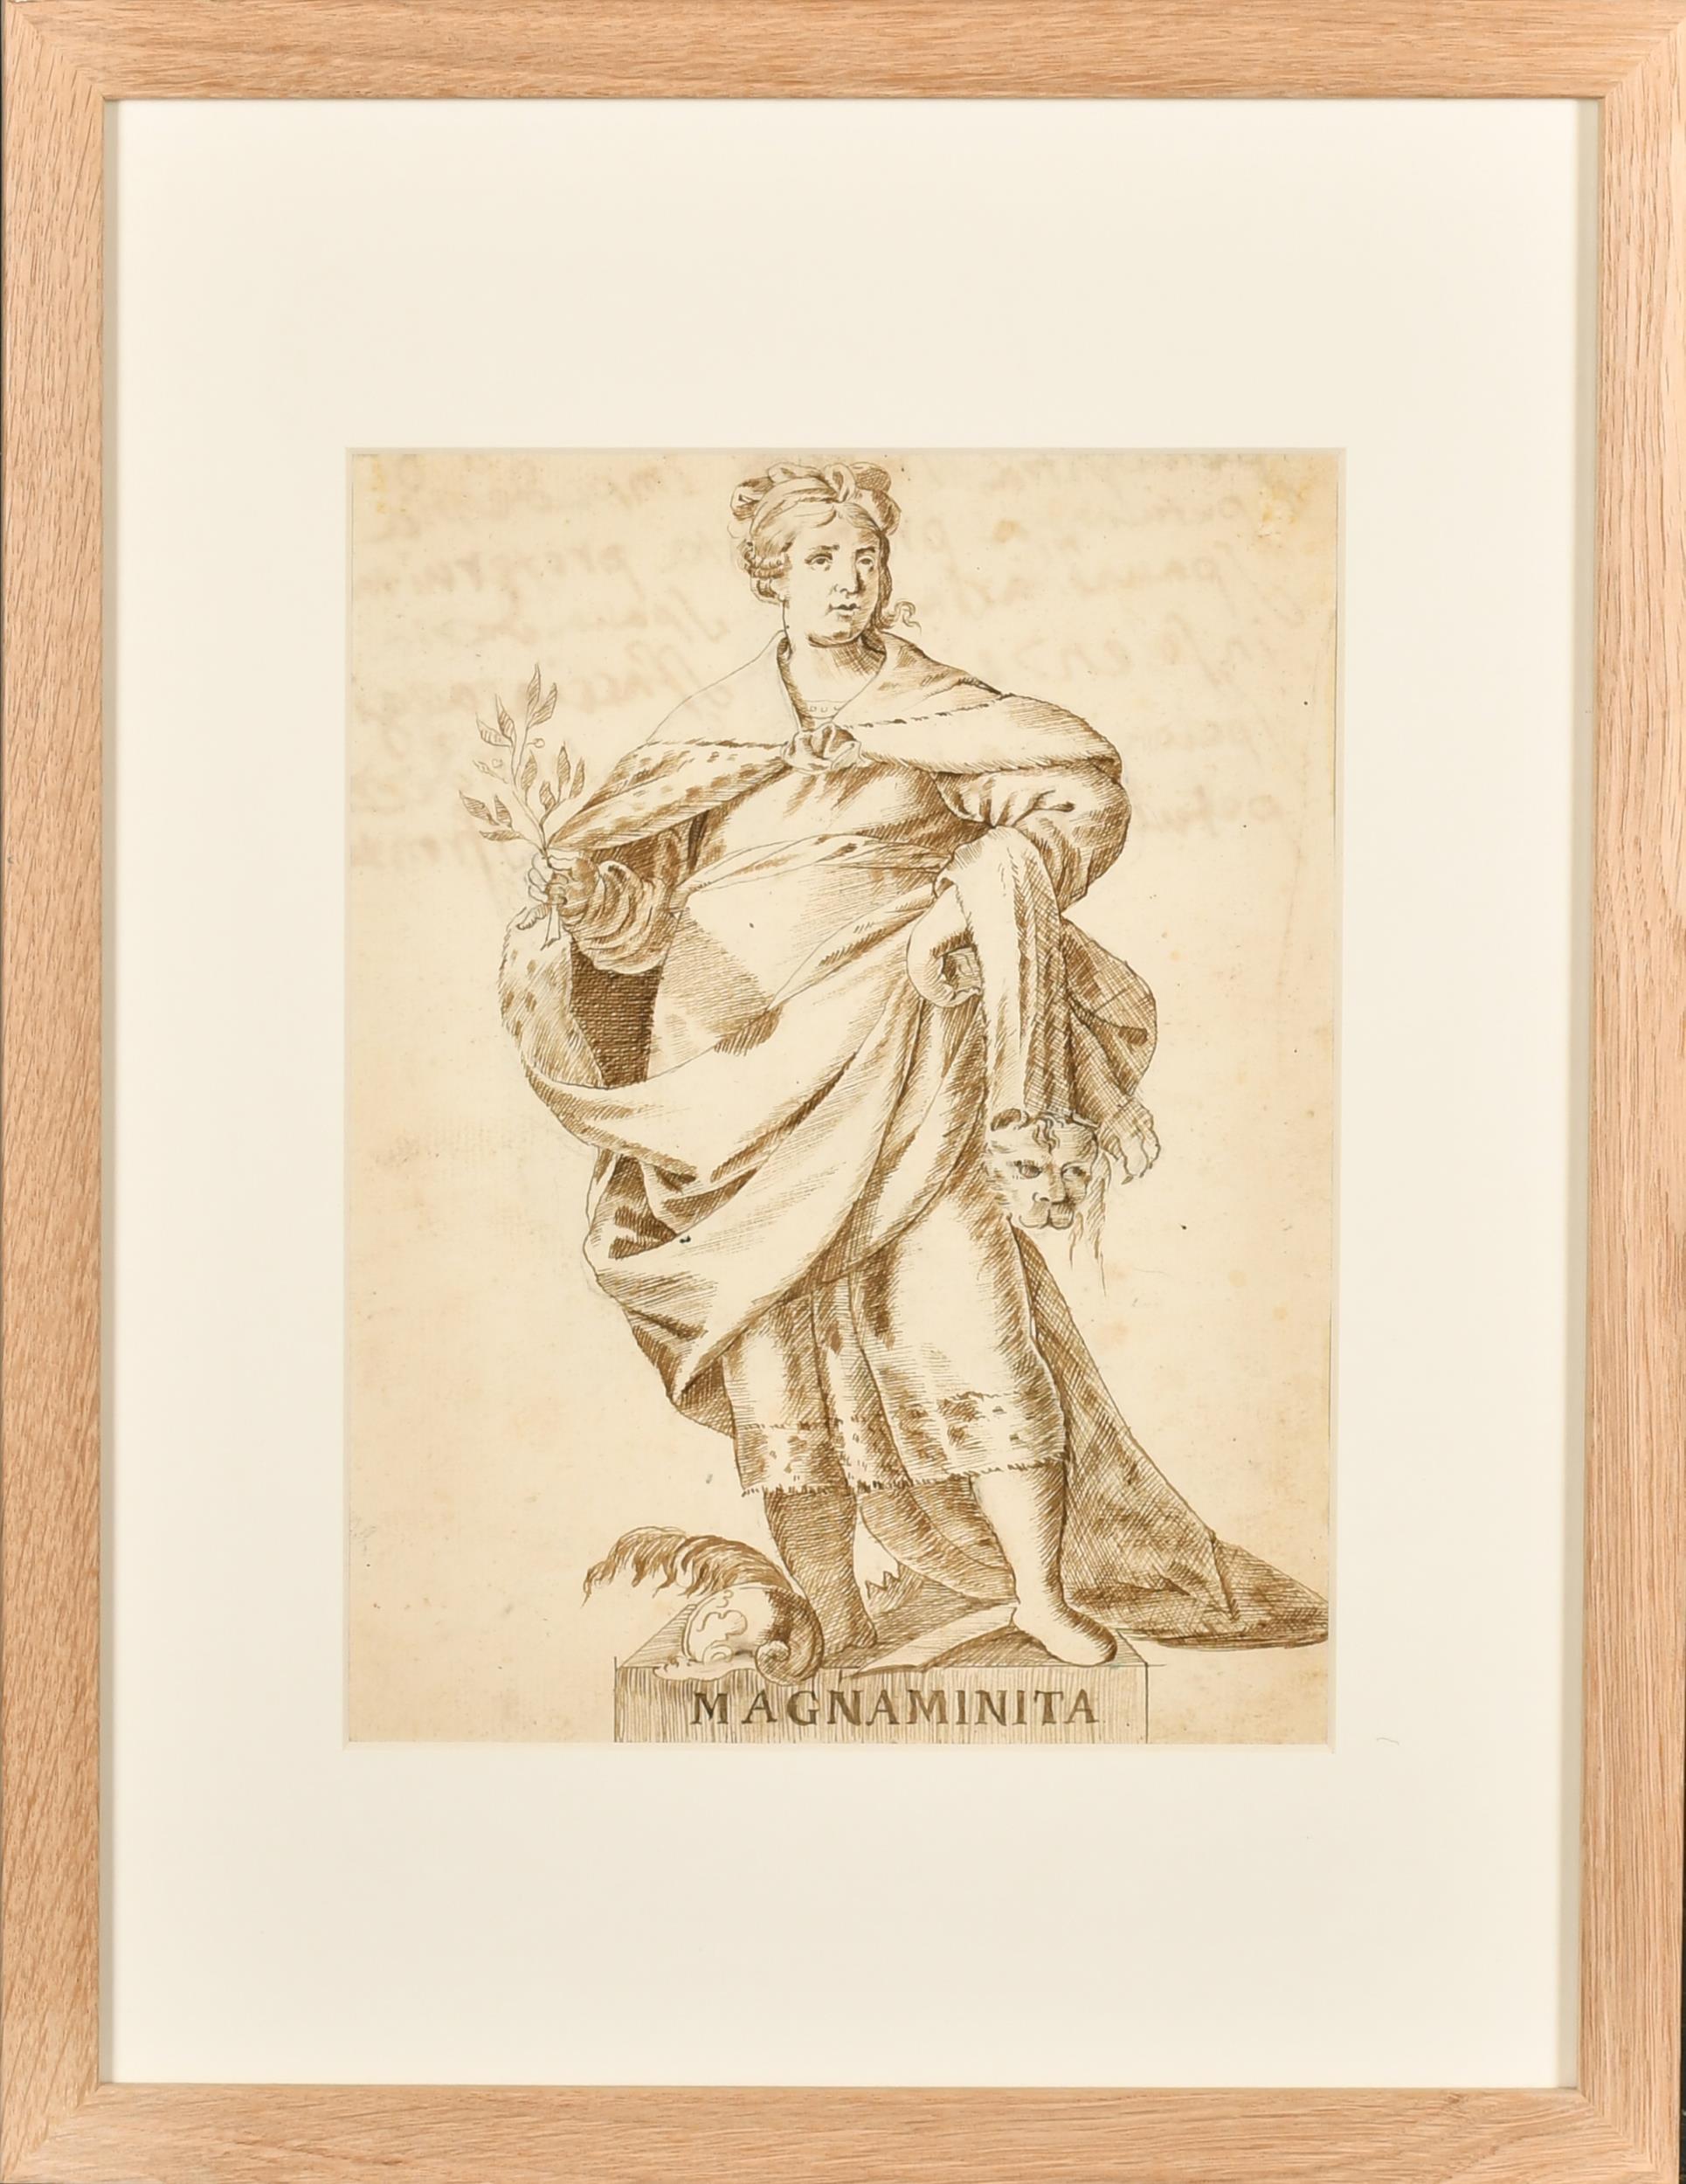 Italienische alte Meister-Tinten- und Waschzeichnung, römische Allegorische Magnaminita, 1700er Jahre – Painting von 18thC Italian Old Master